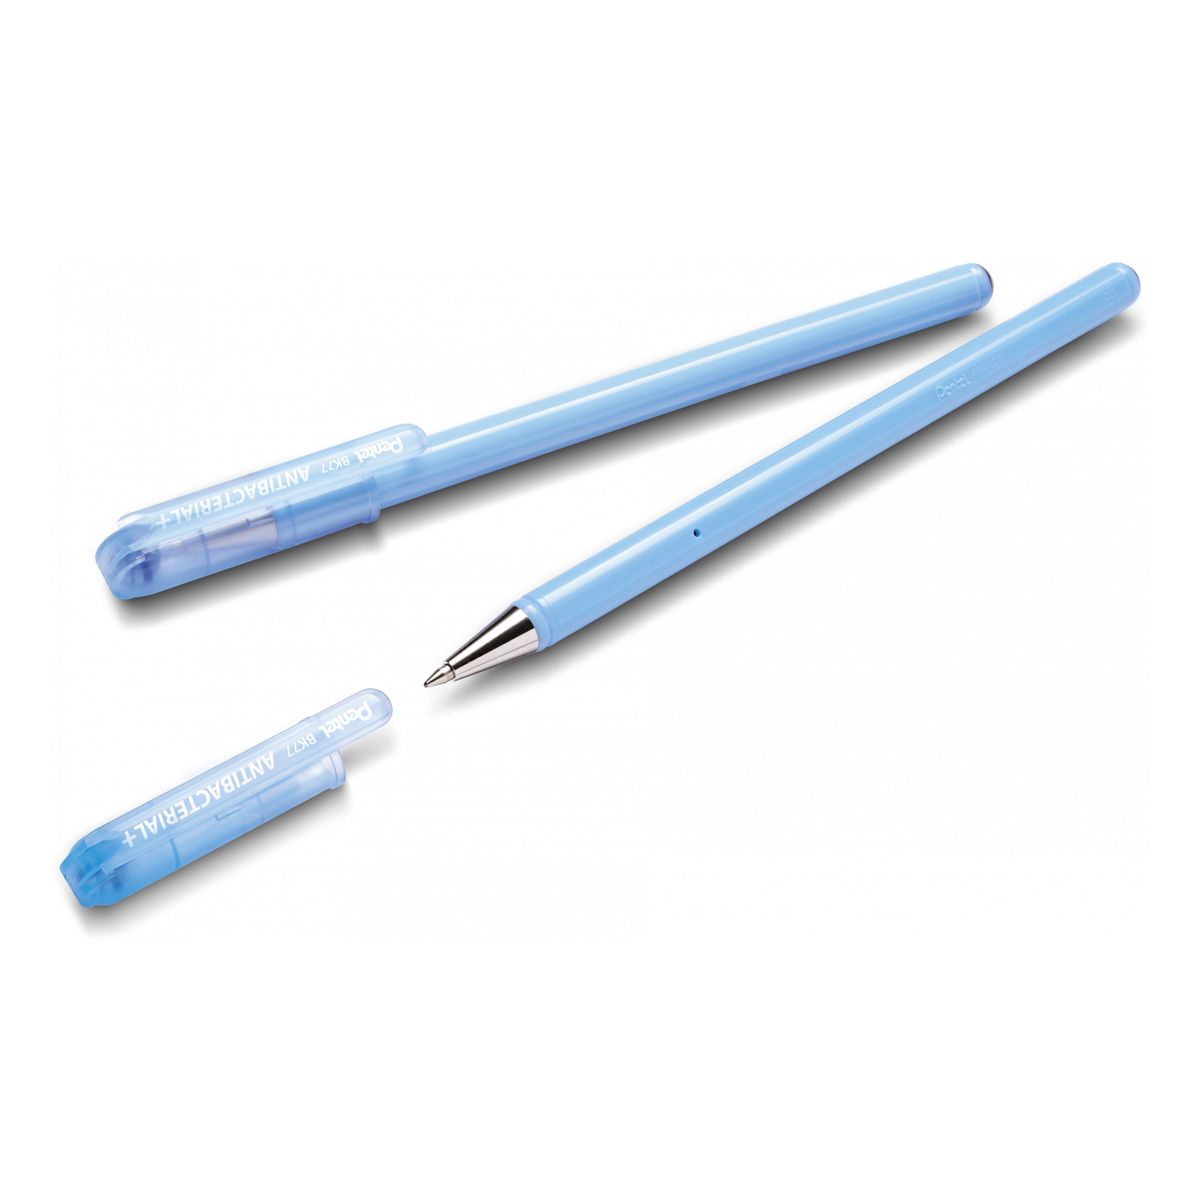 Długopis standardowy Pentel niebieski 0,27mm (BK77AB-CE)